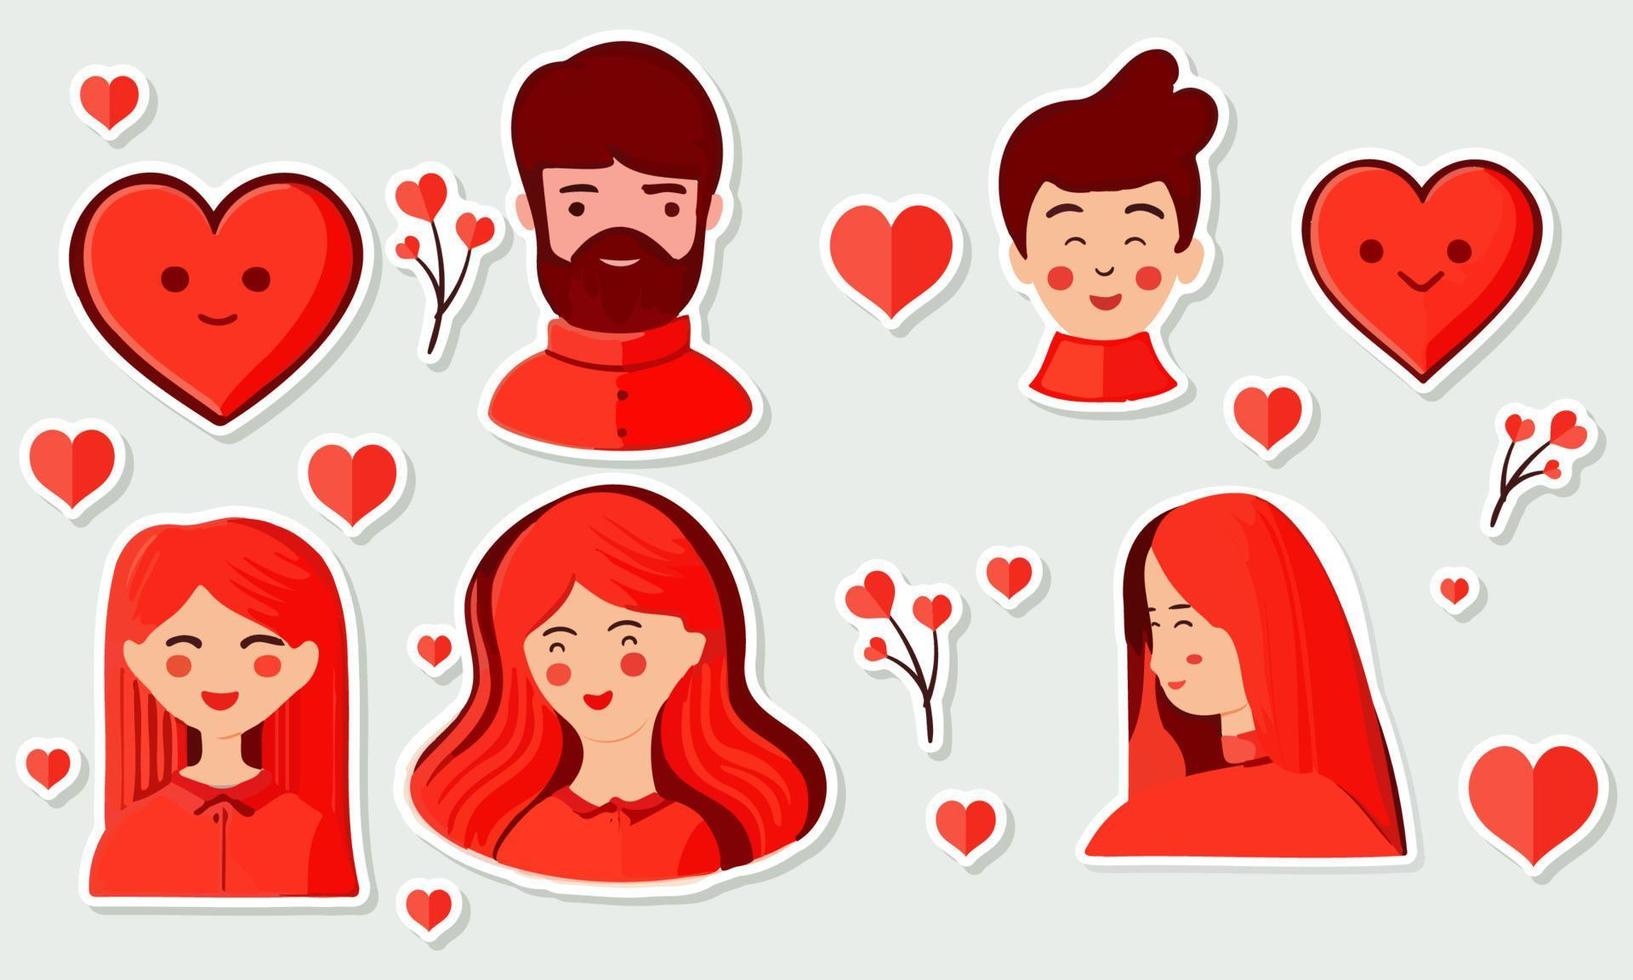 jong mannetje en vrouw karakter met harten voor Valentijnsdag dag of liefde sticker verzameling. vector